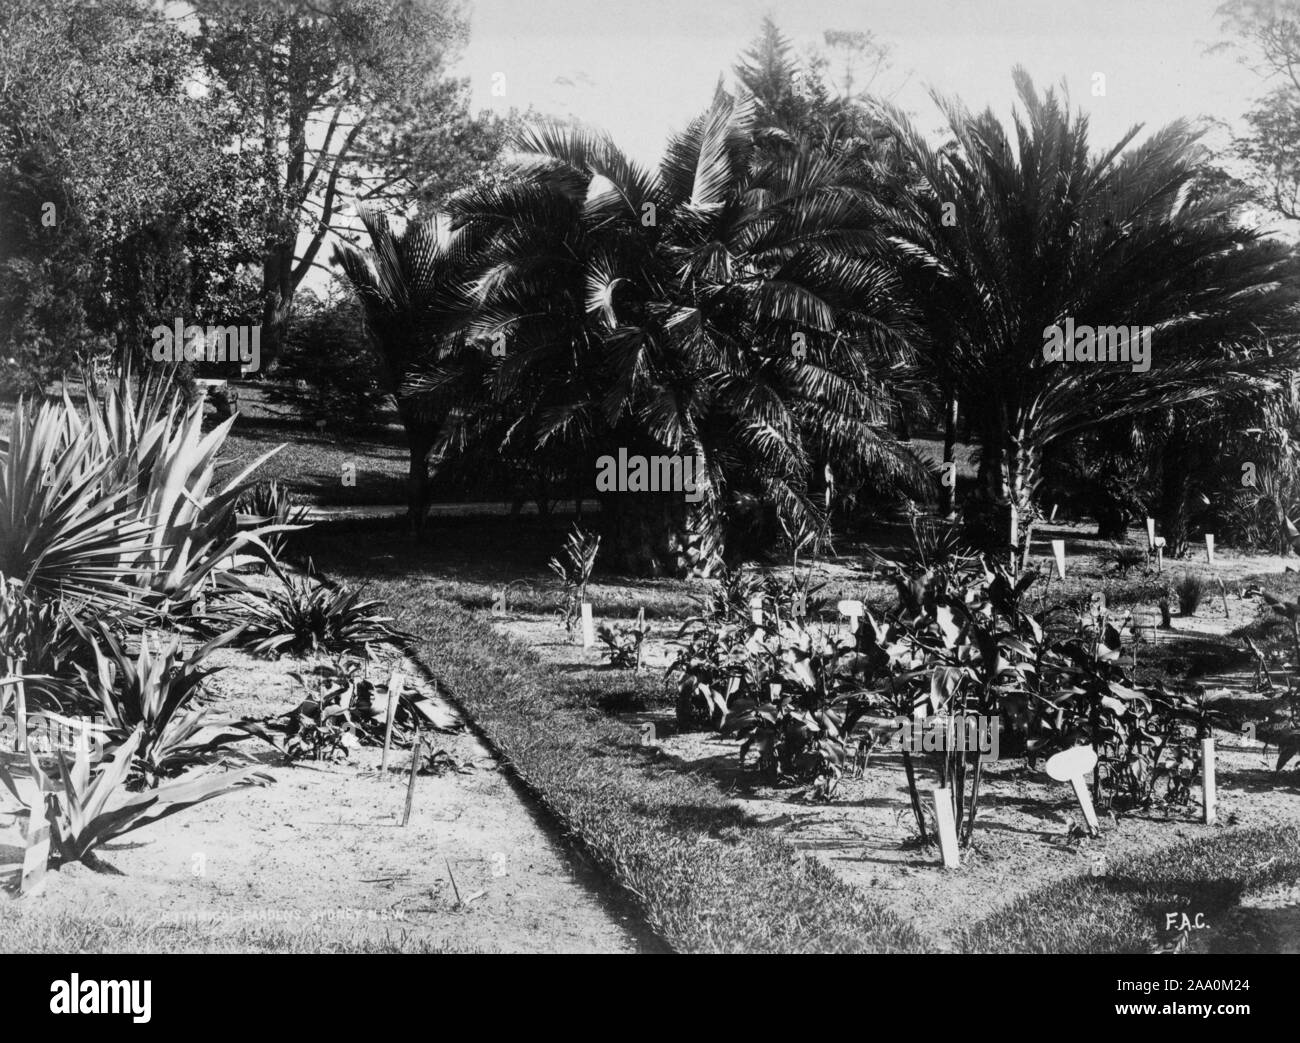 Fotografia in bianco e nero di un'area giardino e alcune palme in background in Royal Botanic Garden di Sydney, Nuovo Galles del Sud, Australia, dal fotografo Frank Coxhead, 1885. Dalla Biblioteca Pubblica di New York. () Foto Stock